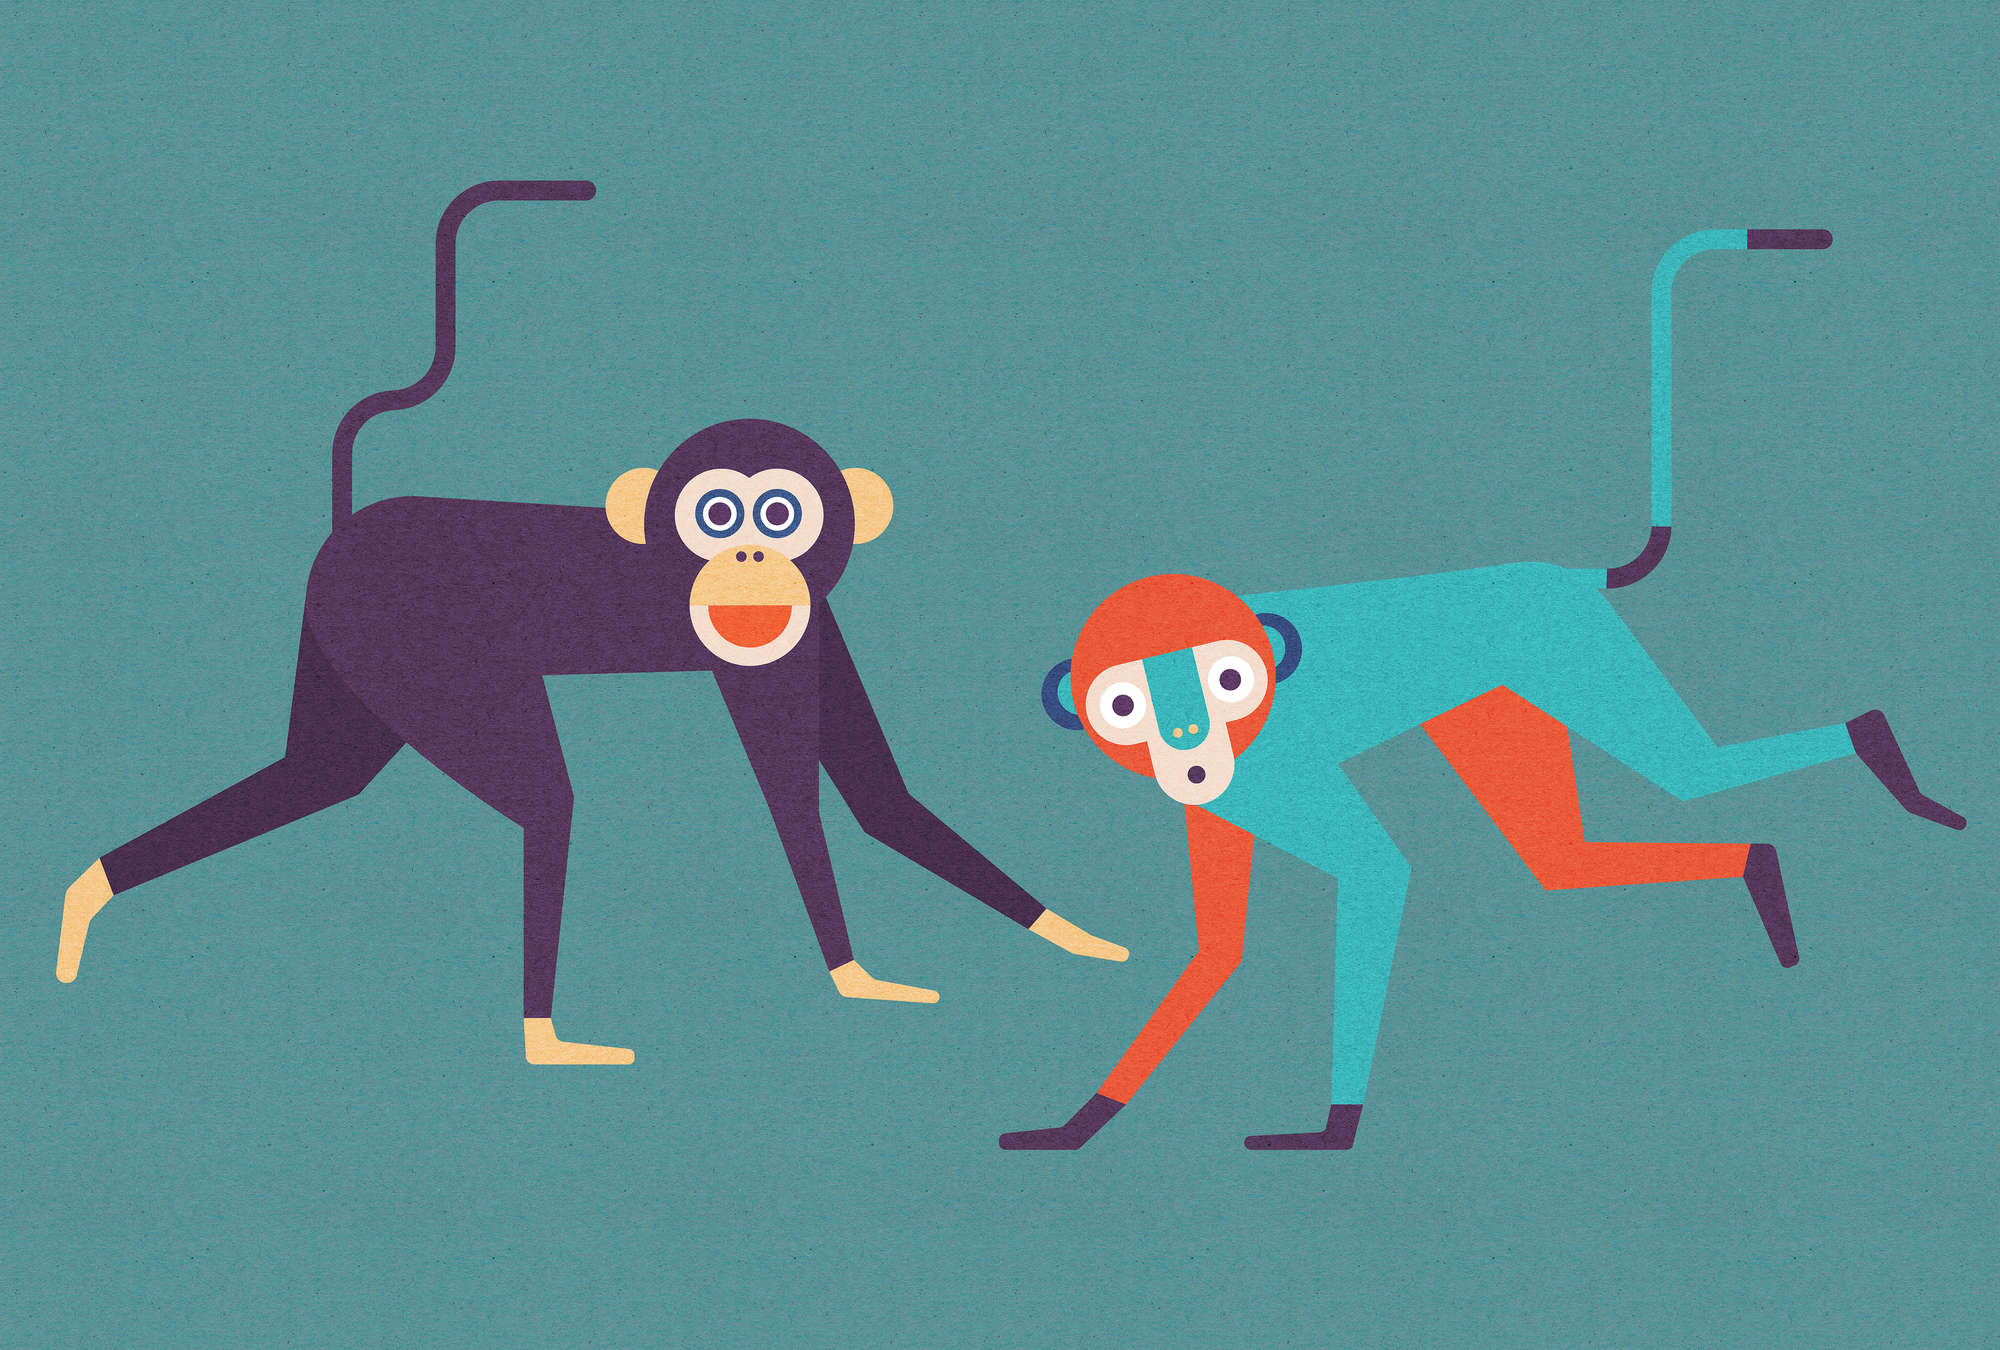             Monkey Busines 1 - Carta da parati con struttura in cartone, banda di scimmie in stile fumetto - Beige, arancione | Pile liscio premium
        